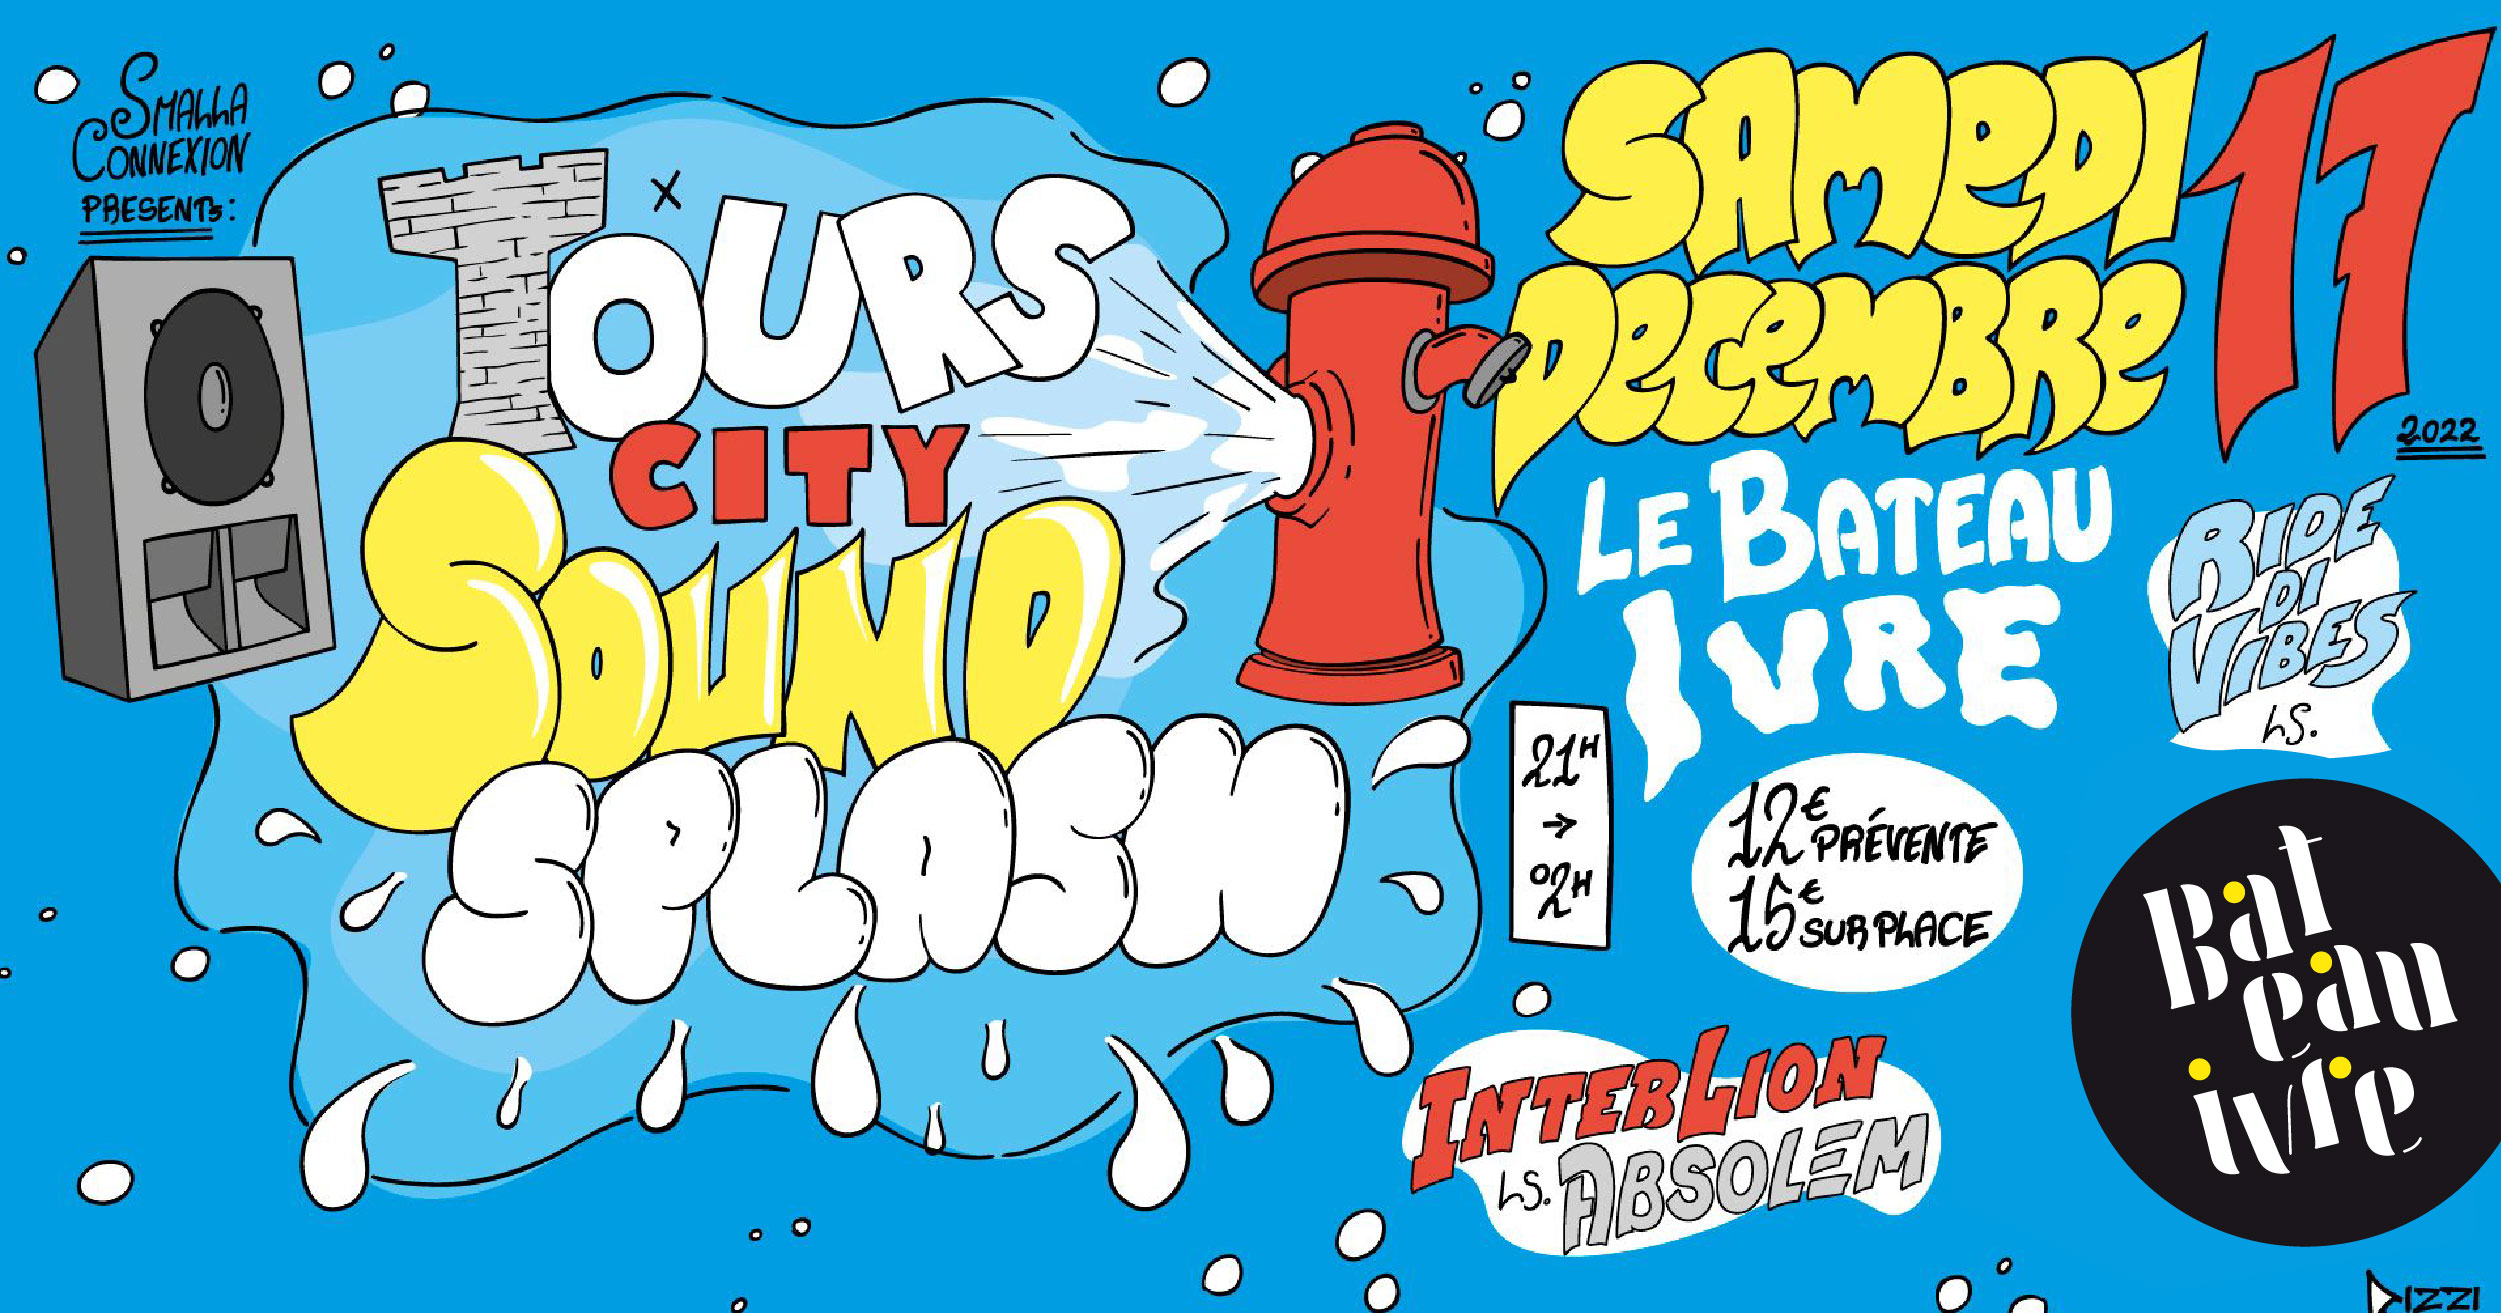 Tourscity sound’splash©